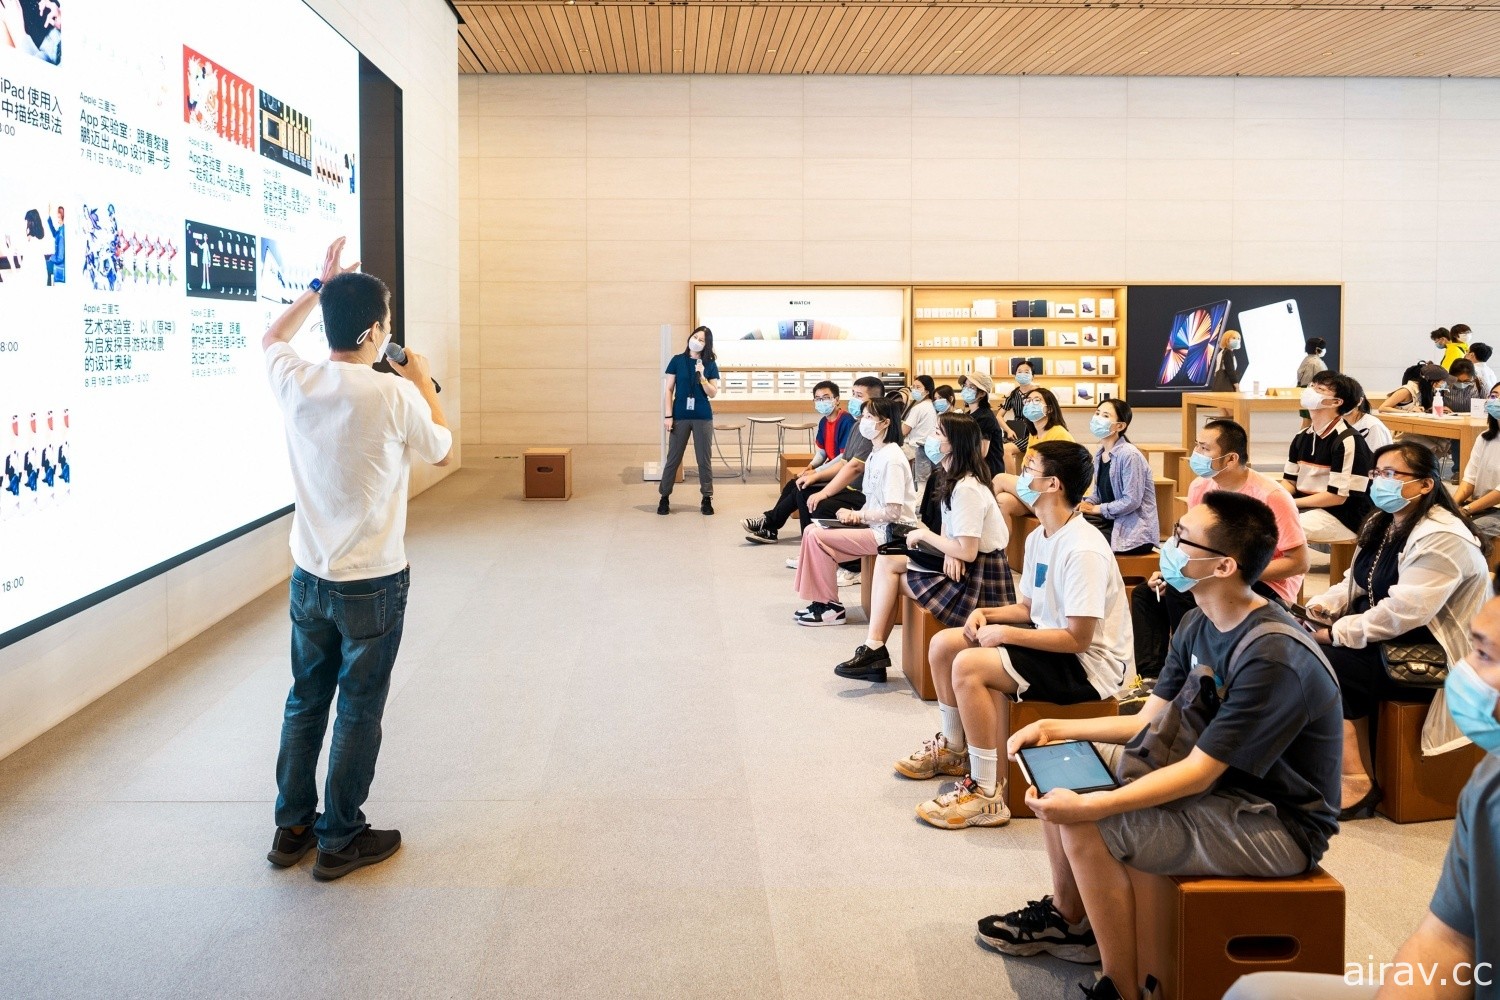 Apple 全球開發者大會將於台灣時間 6 月 7 日凌晨以 keynote 發表會演講揭開序幕